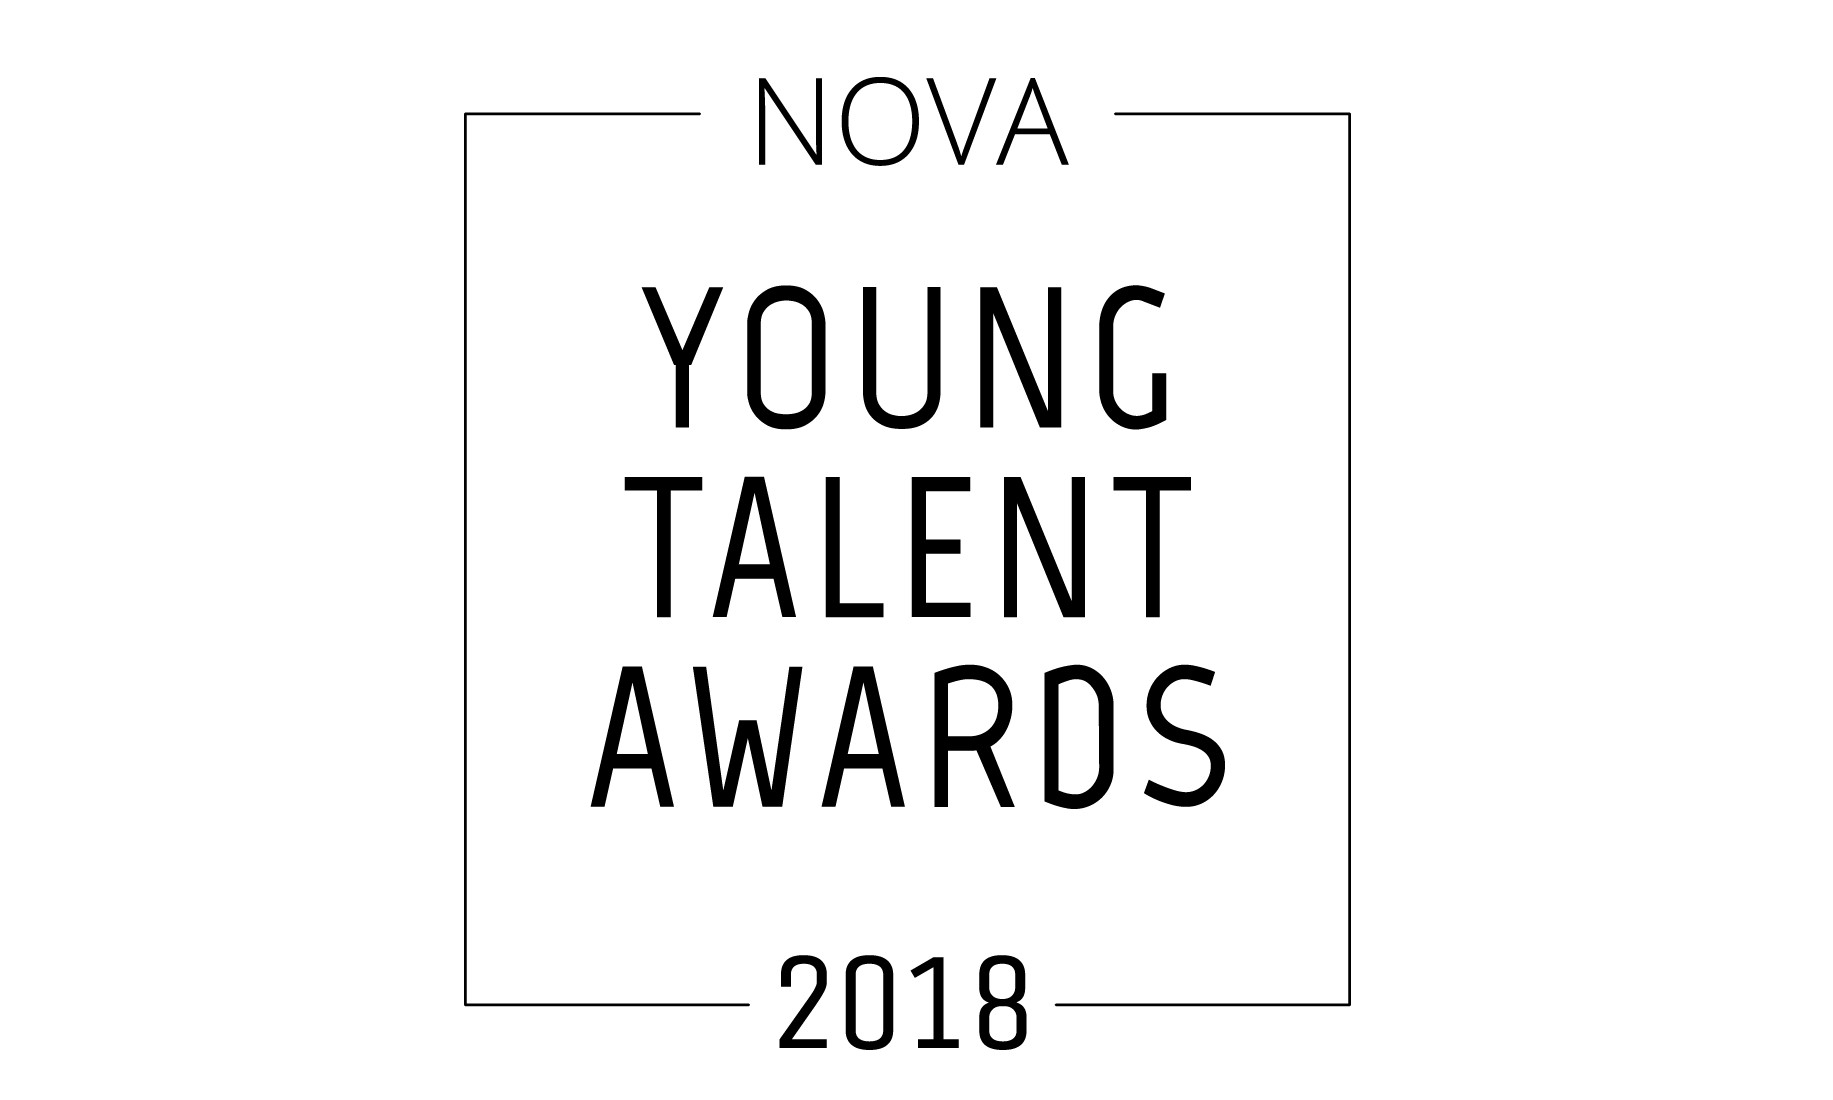 NOVA Young Talent Awards 2018